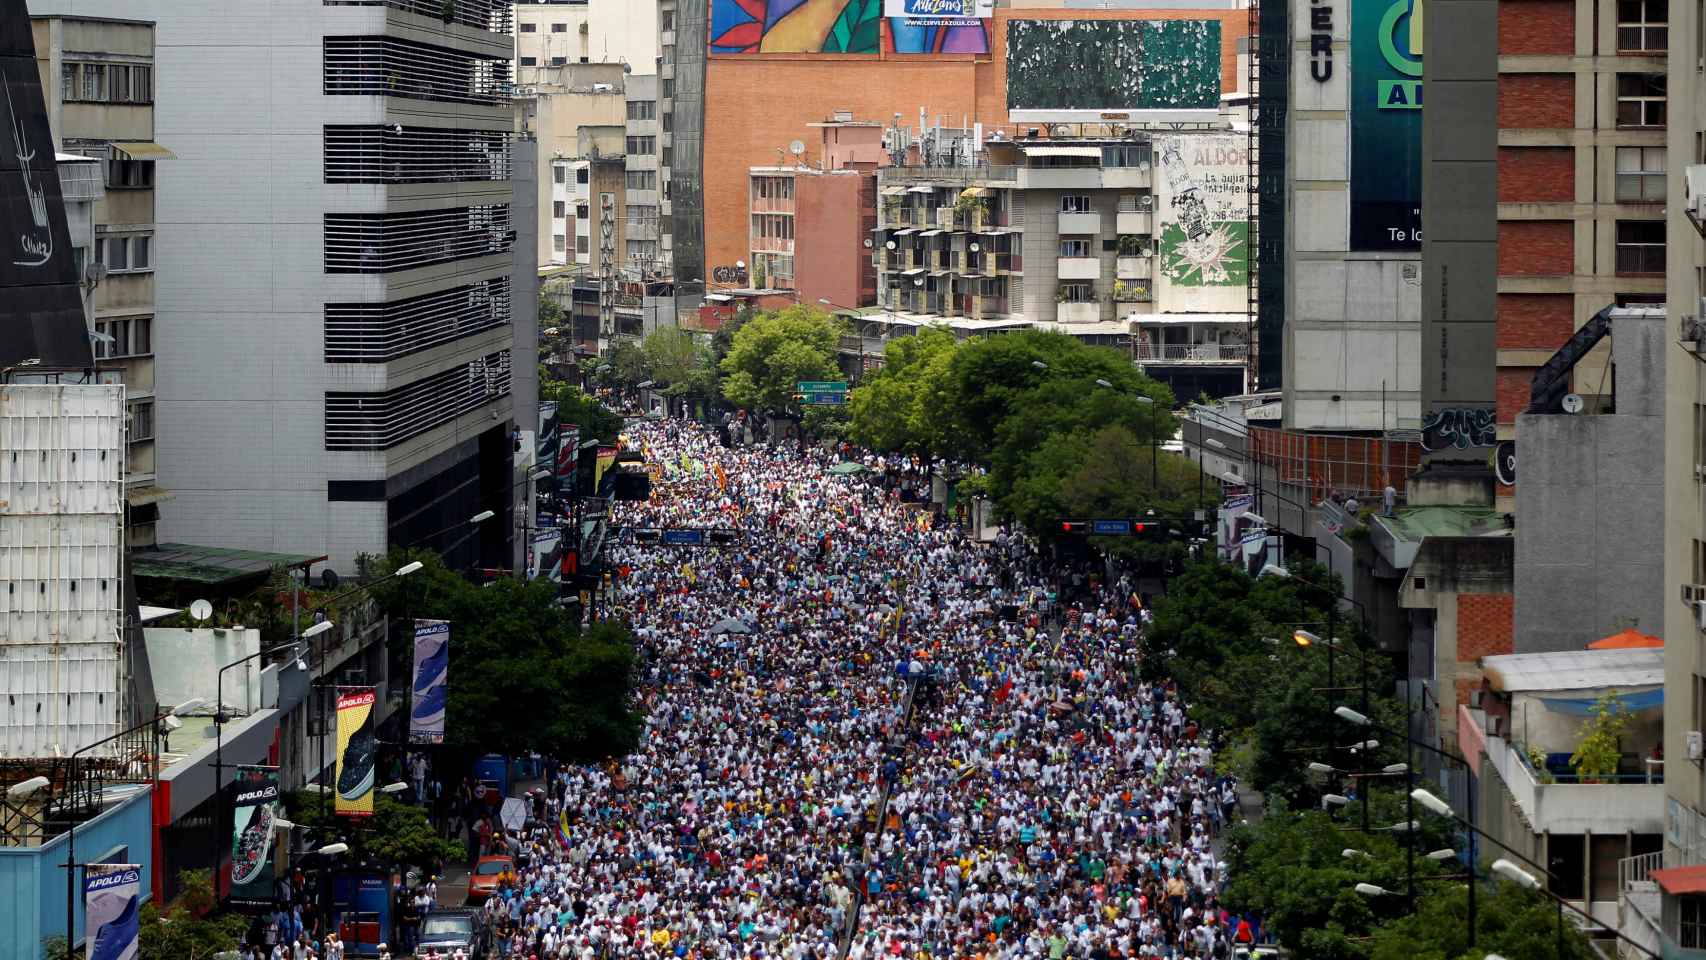 La oposición logró sacar a miles de personas para protestar en Caracas. | Reuters